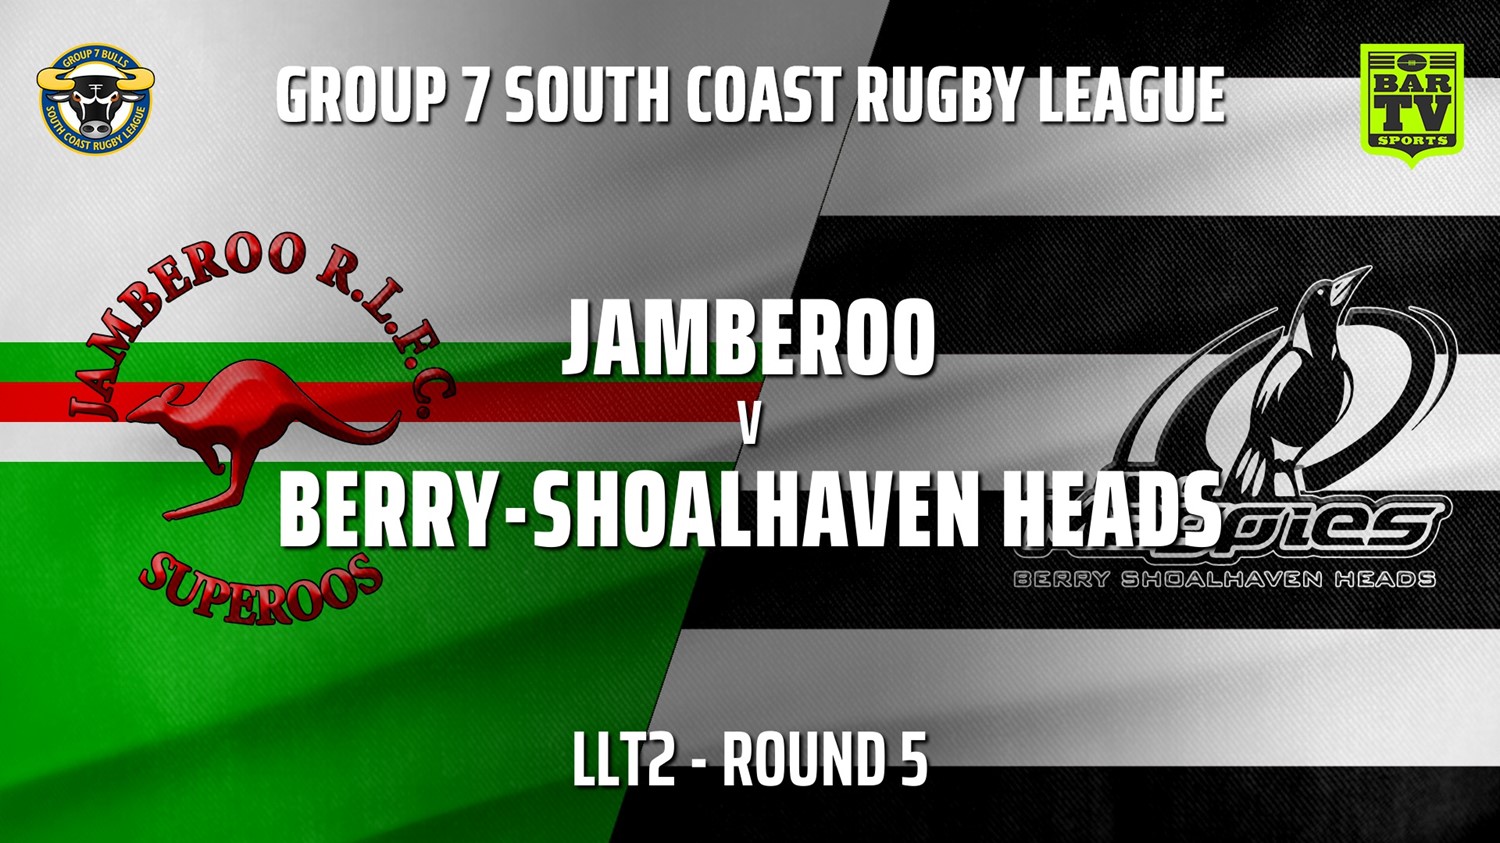 210515-Group 7 RL Round 5 - LLT2 - Jamberoo v Berry-Shoalhaven Heads Slate Image